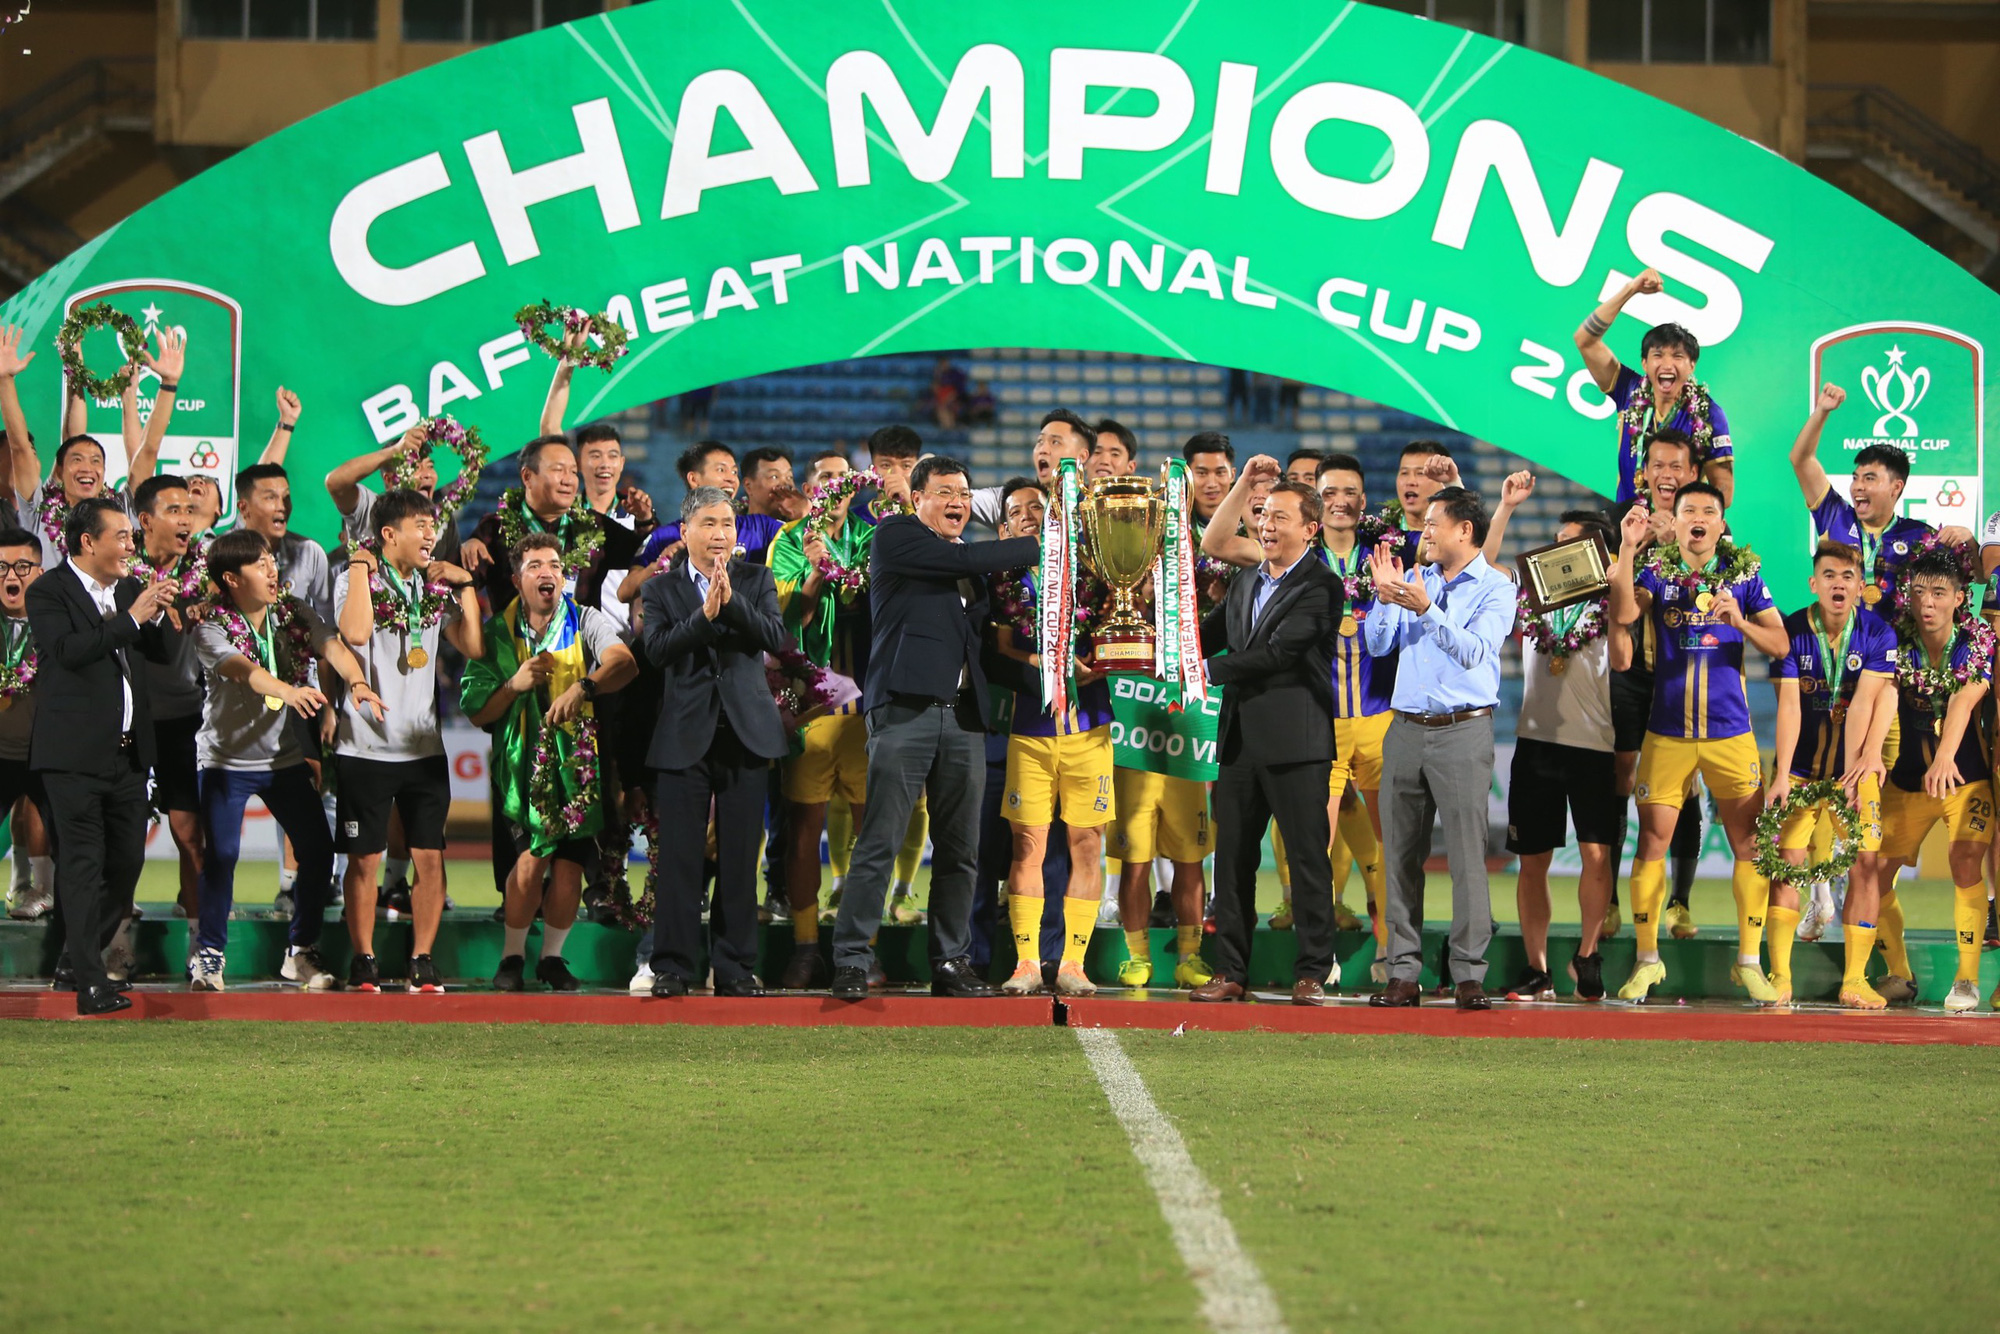 Chung kết Cúp Quốc gia 2022: CLB Hà Nội đăng quang